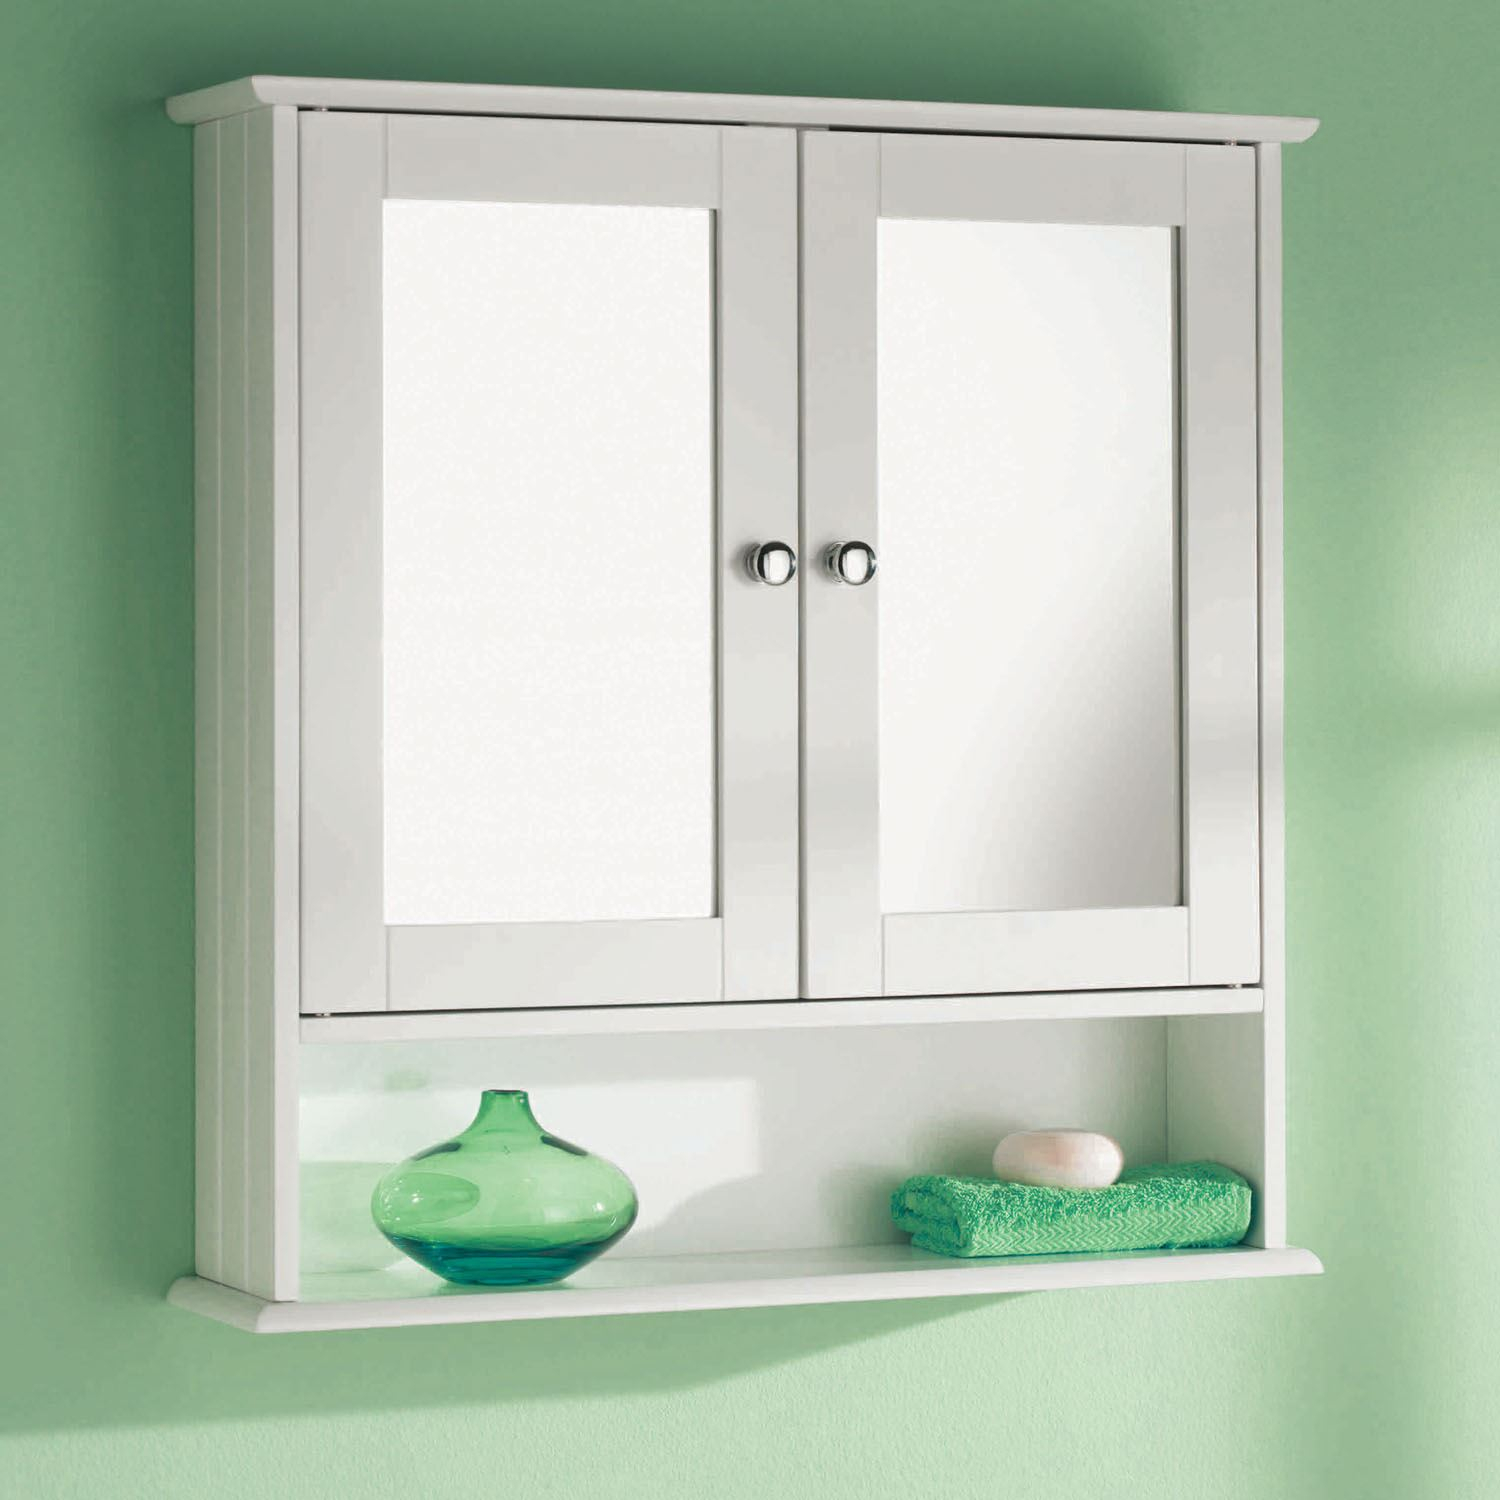 Double Door Mirror Shelf Wall Mounted Wood Storage Bathroom regarding proportions 1500 X 1500